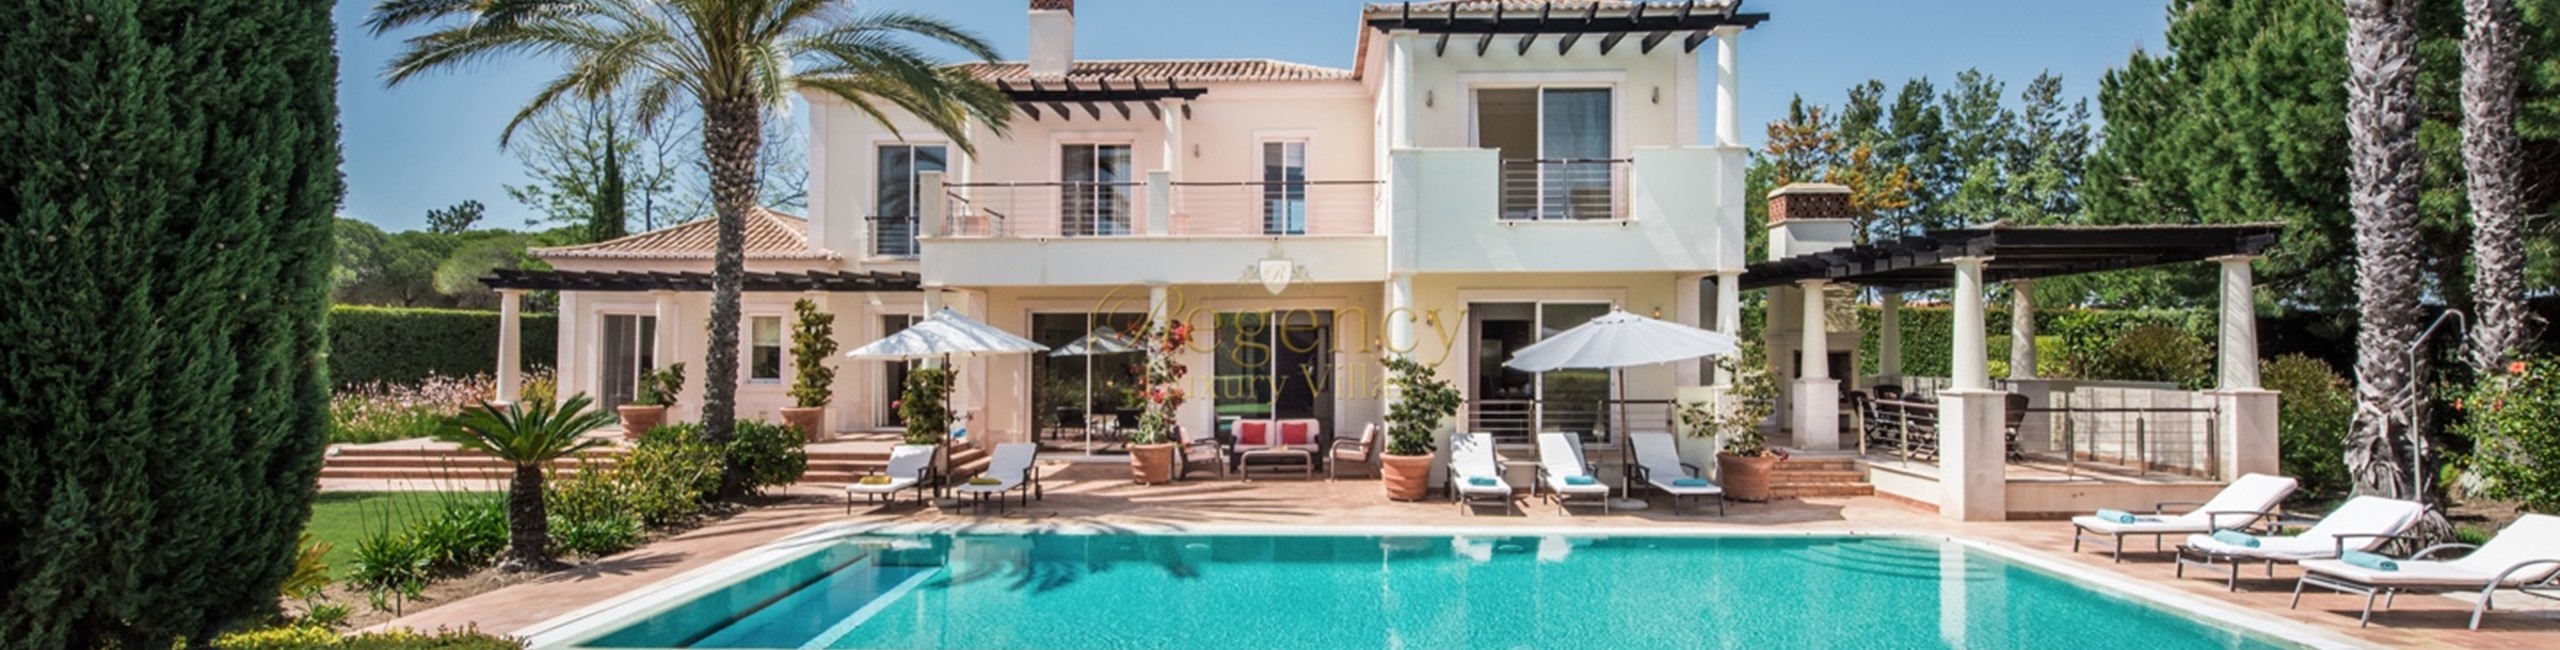 Luxury Villa To Rent With Pool Quinta Do Lago Algarve